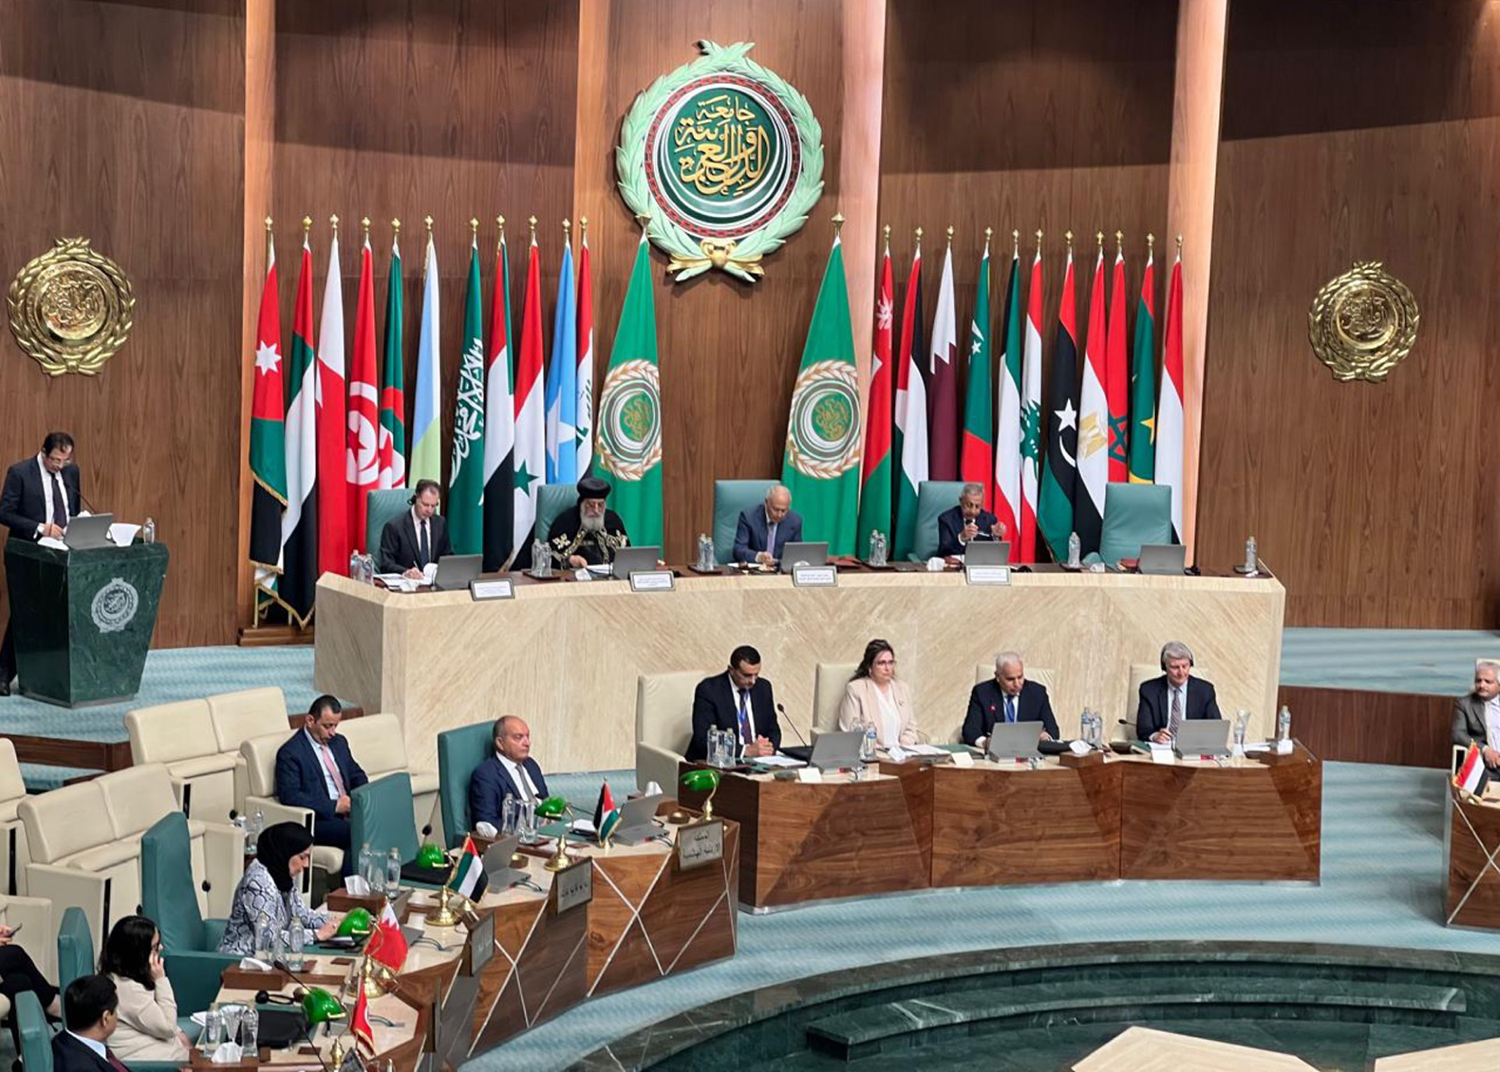 Le discours du secrétaire général de la Ligue arabe, Ahmed Aboul Gheit